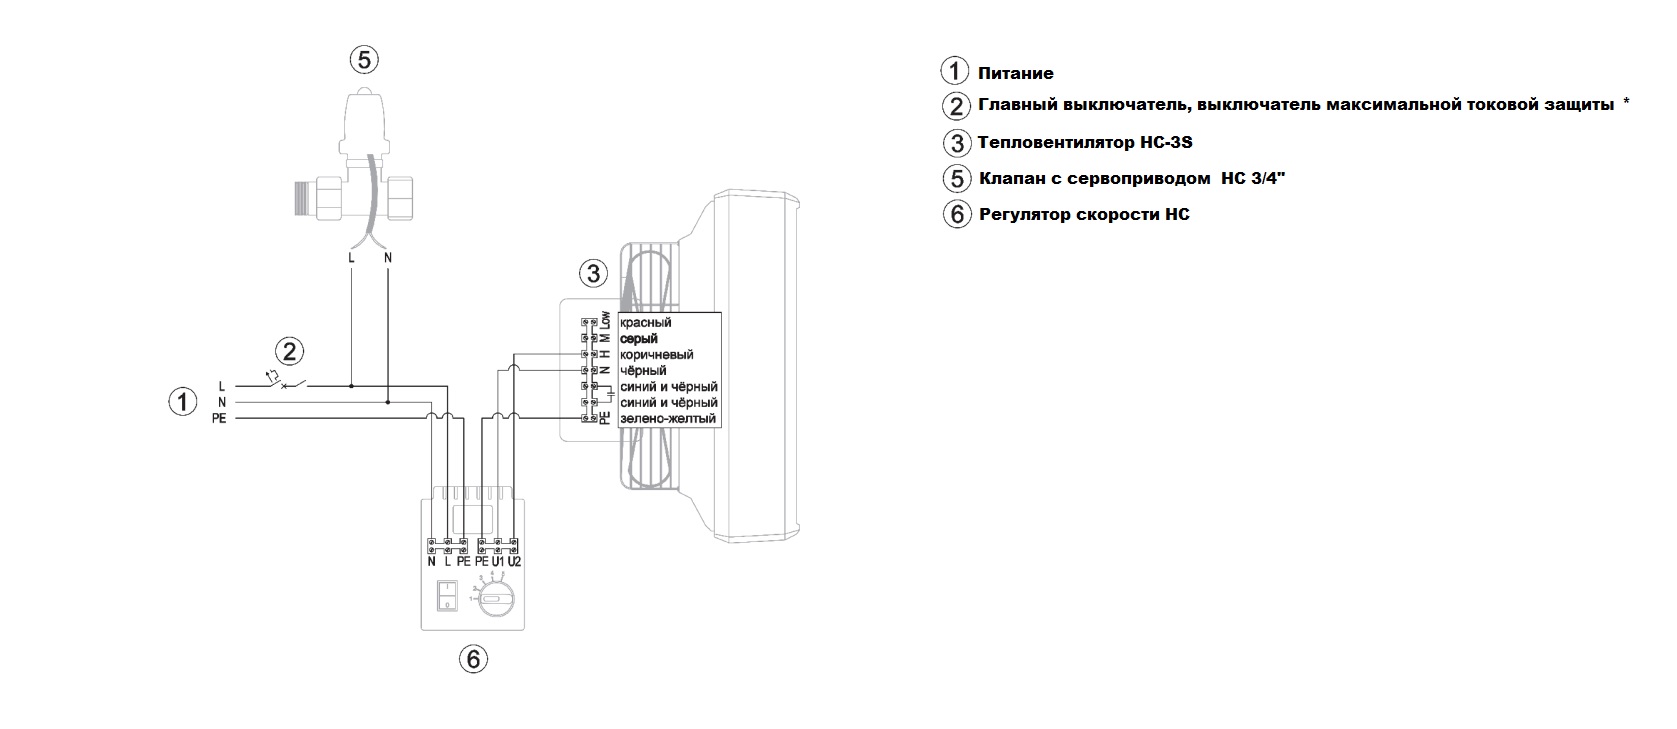 skhema-podklyucheniya-4 Vodyanoi teploventilyator REVENTON HC45-3S kypit v Ekaterinbyrge v internet-magazine KlimatMarket96.ry Схема подключения